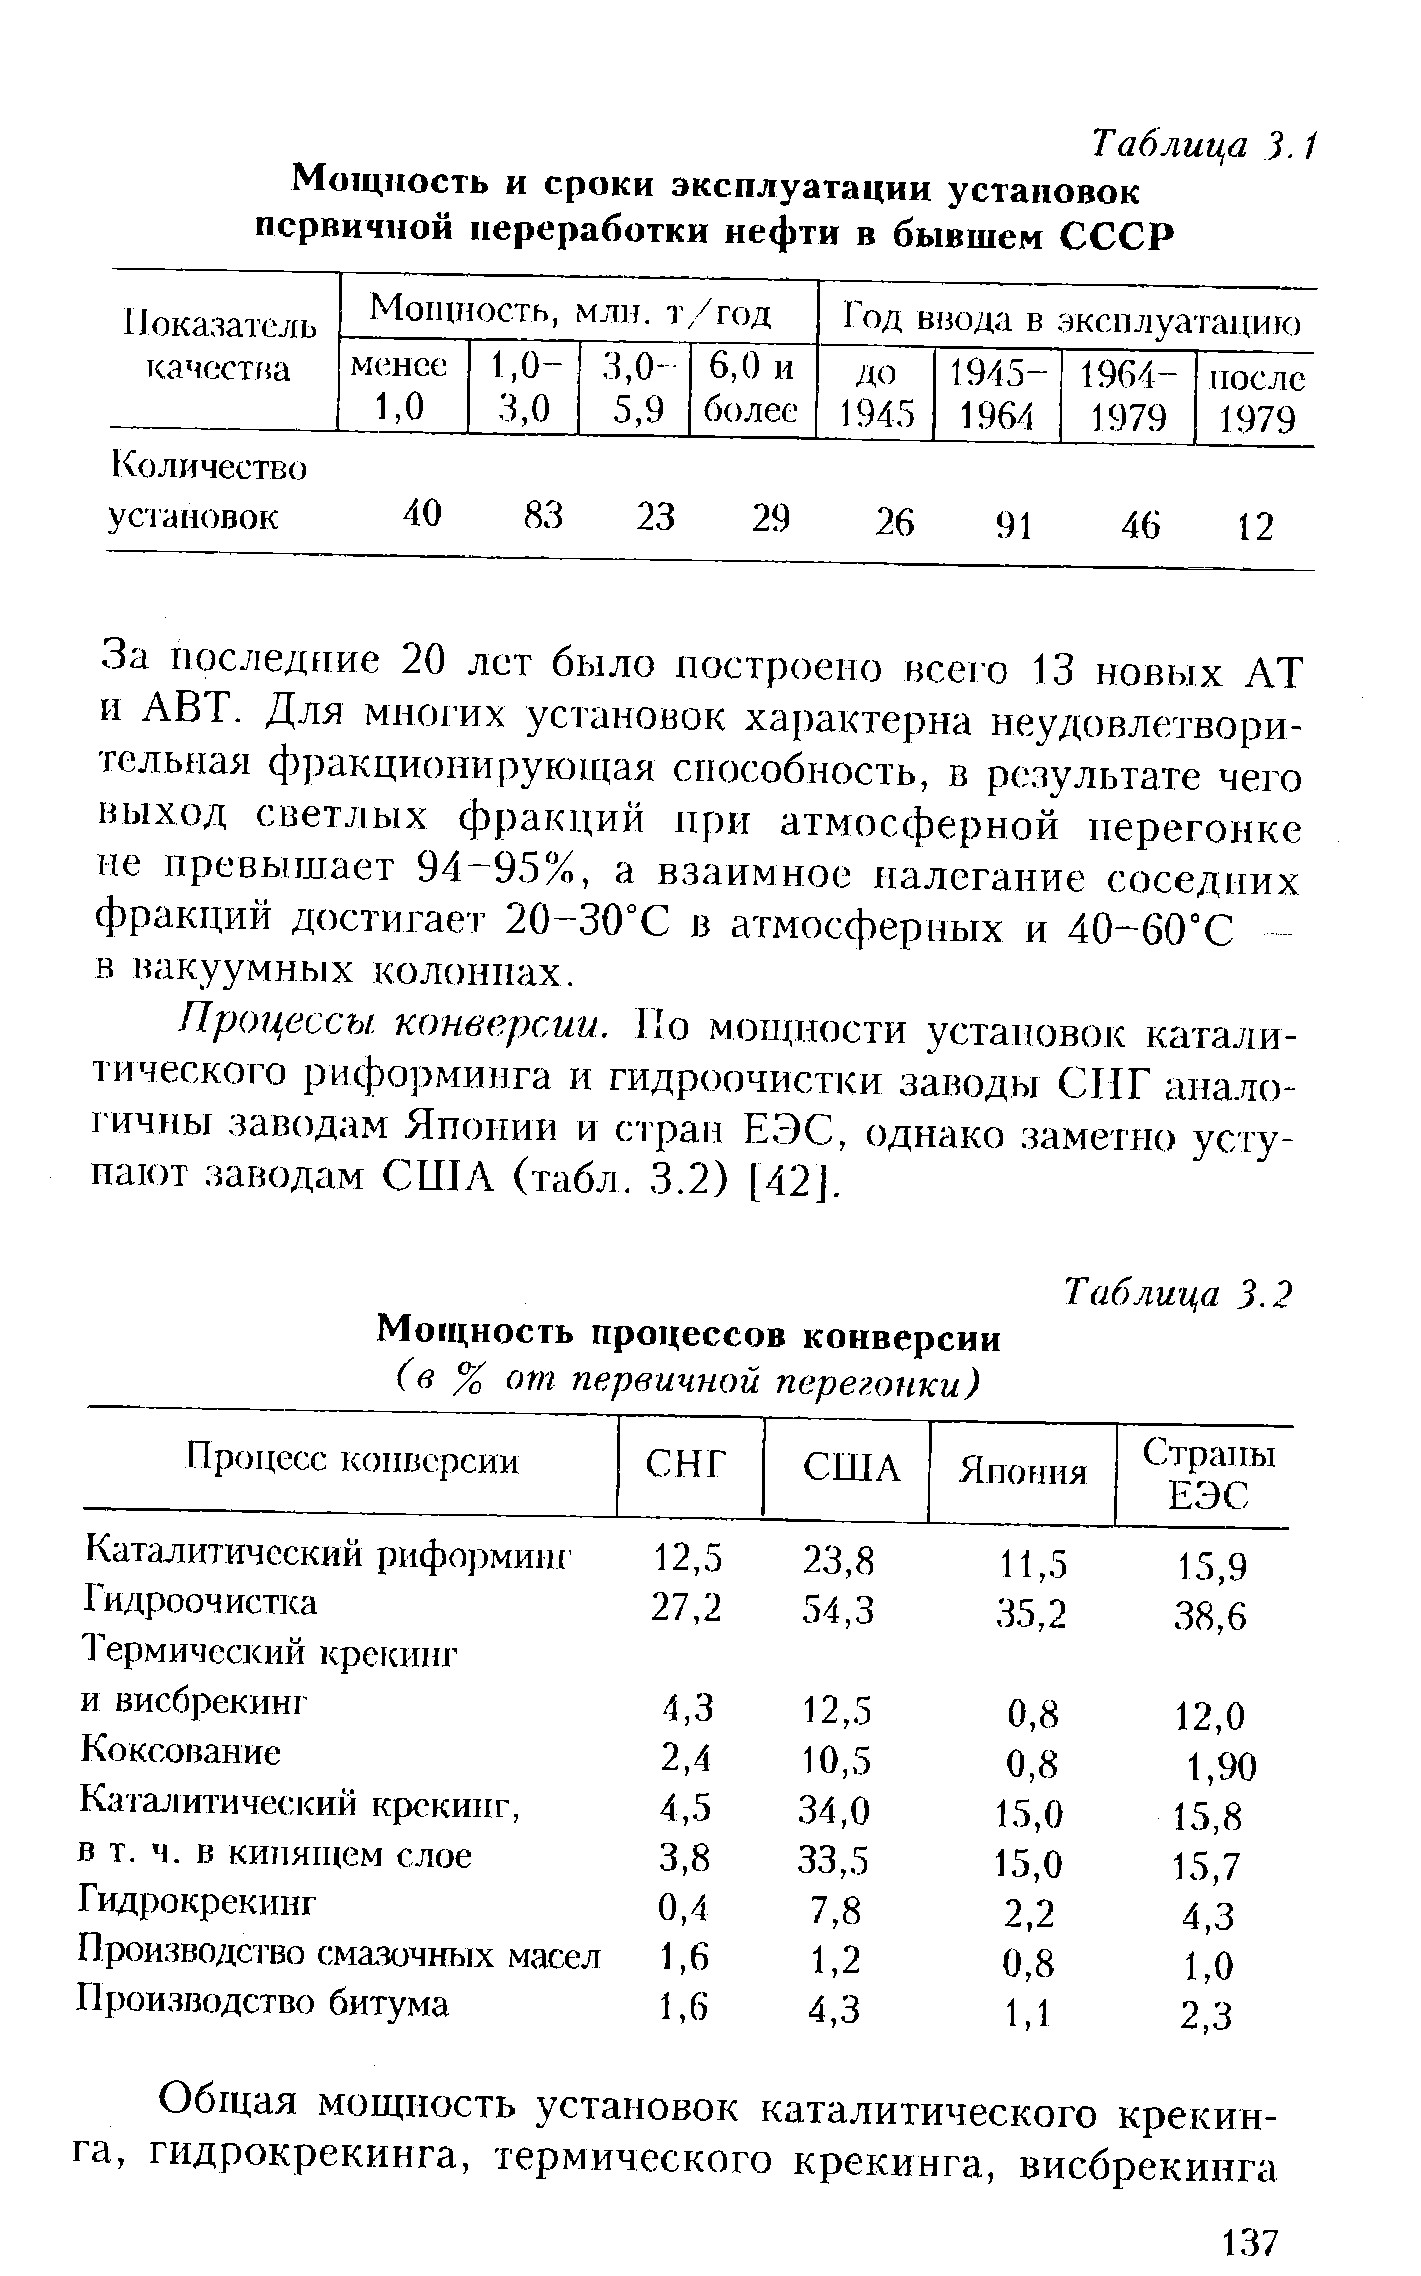 Таблица 3-2 Мощность процессов конверсии
